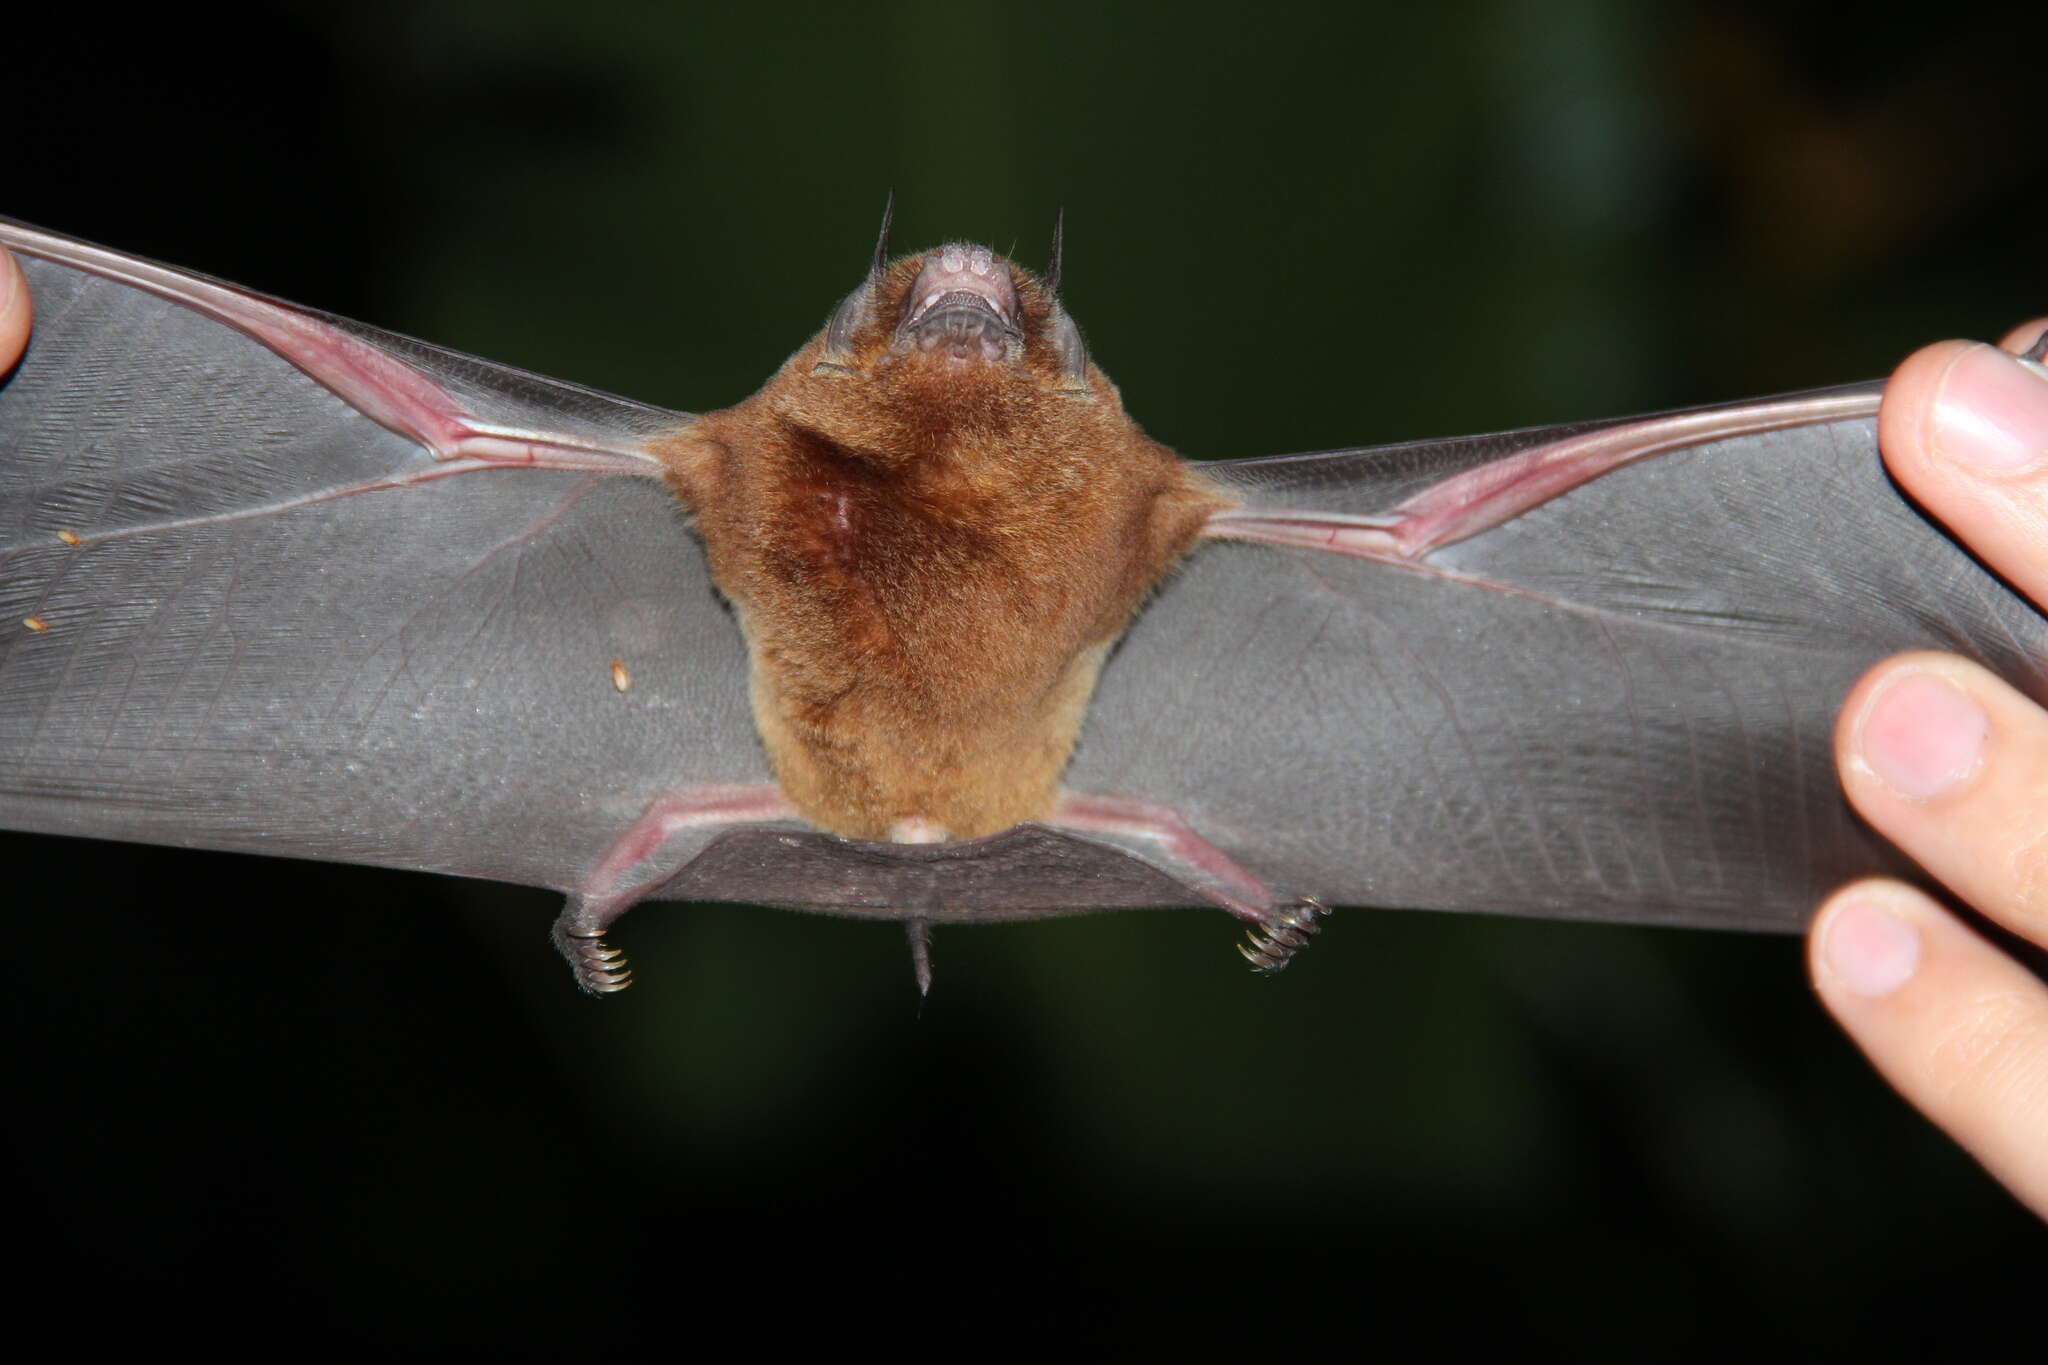 Image of Big Naked-backed Bat